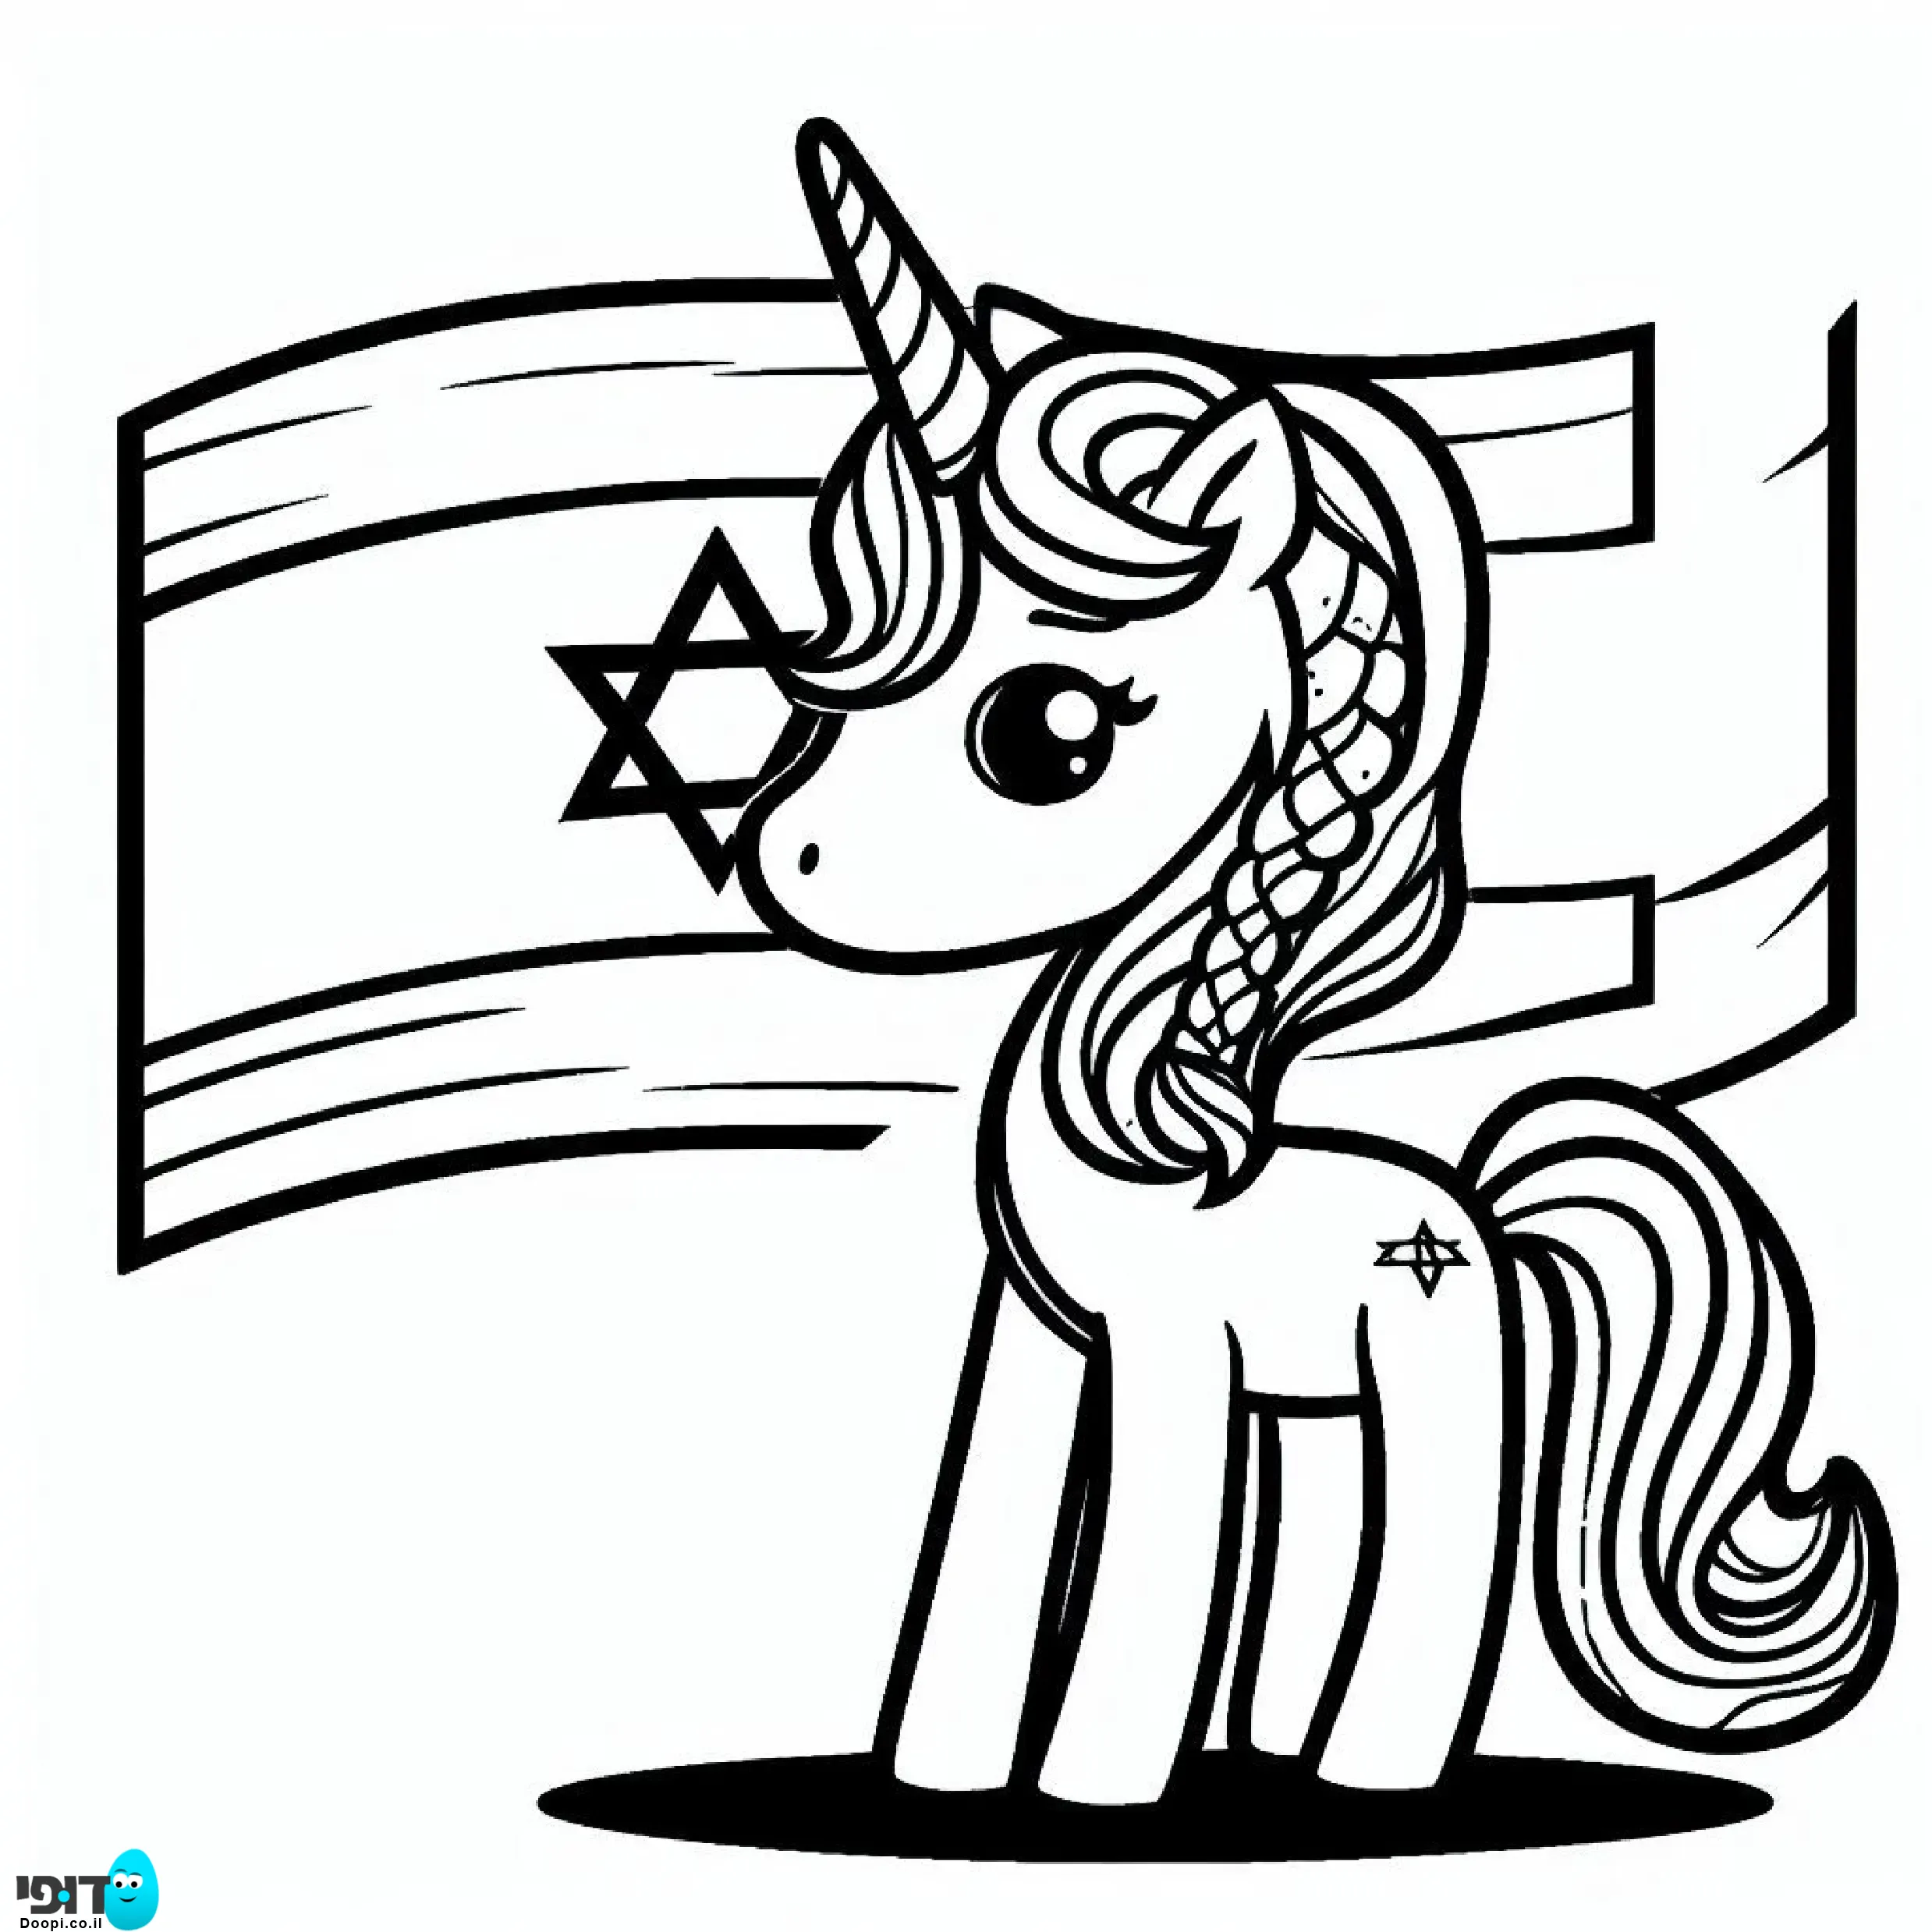 דף צביעה פוני חד קרן עם דגל ישראל